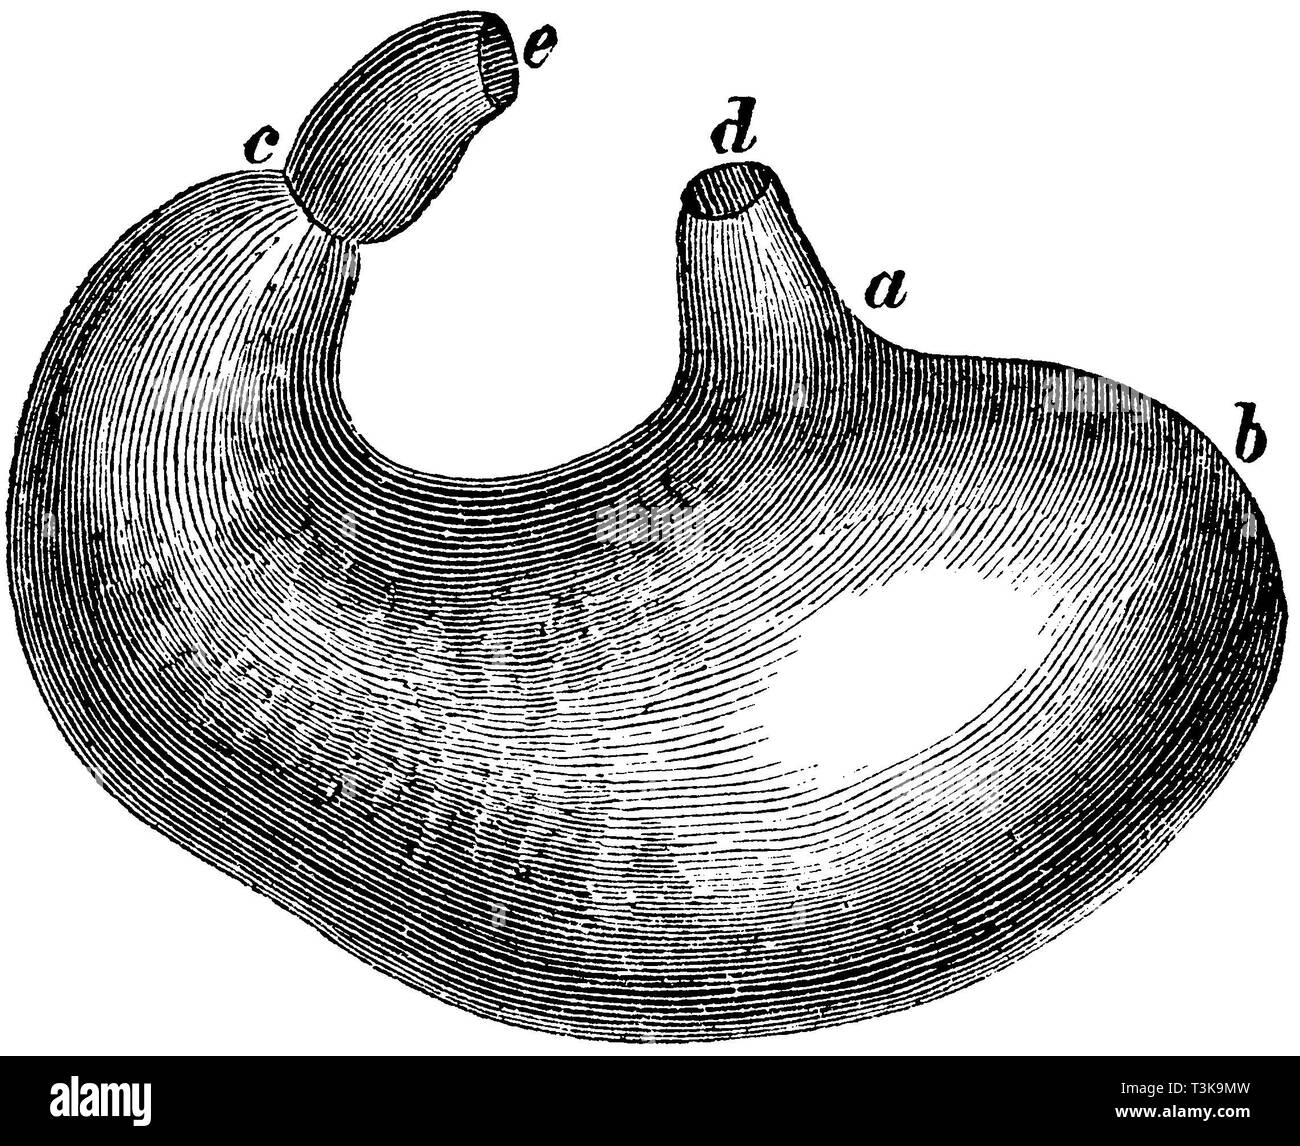 Mensch: Magen eines Erwachsenen, einen Mund, b, c, d, e Zwölffingerdarm Speiseröhre, anonym 1877 Stockfoto